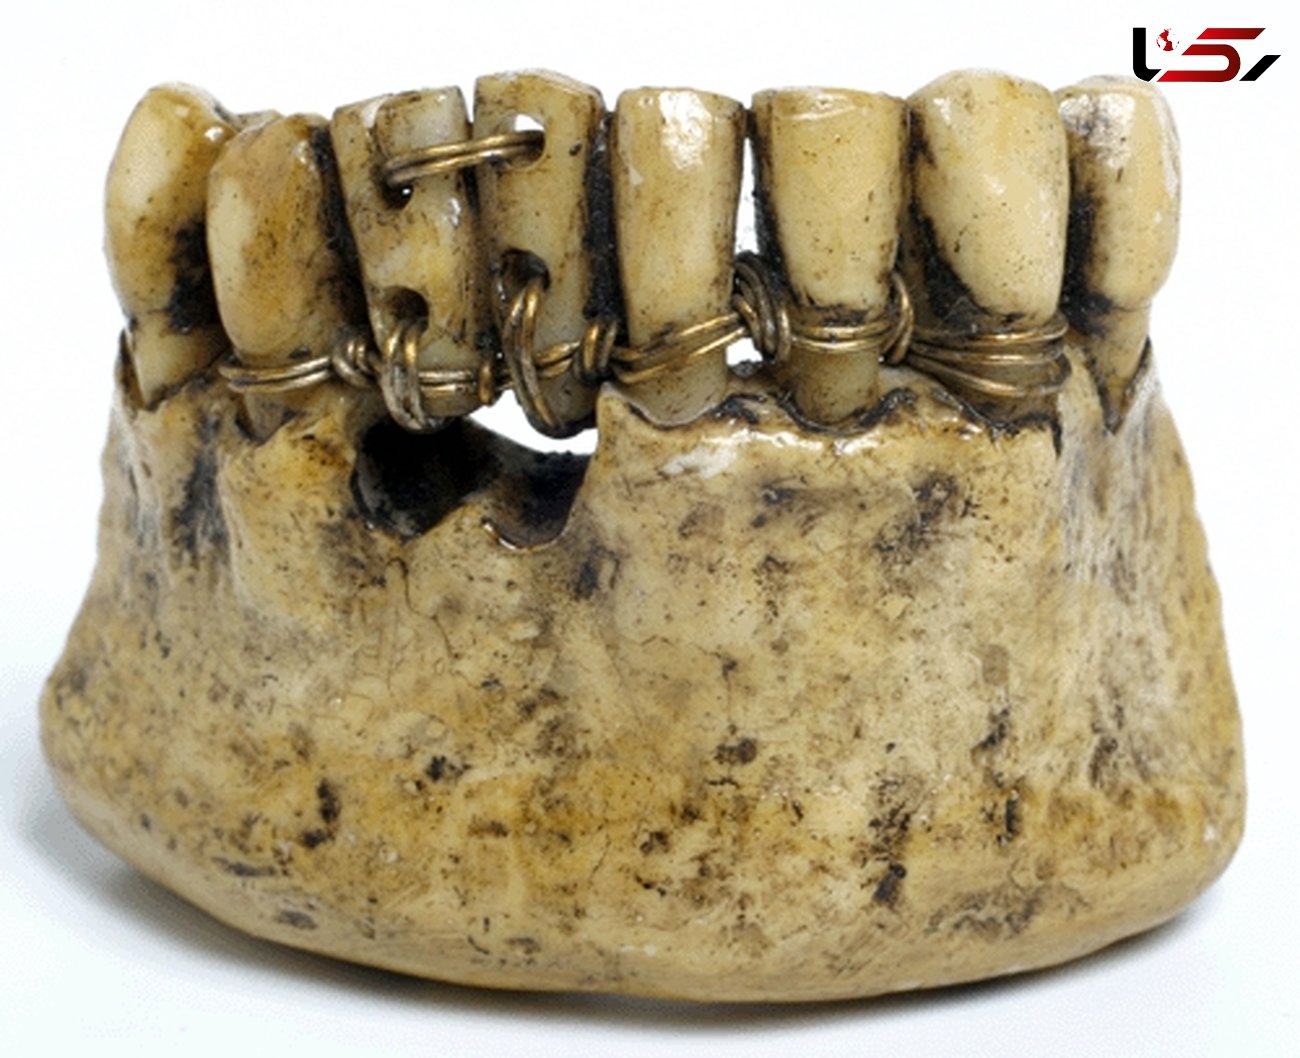 سیم کشی دندان مردگان در مصر باستان! + عکس
